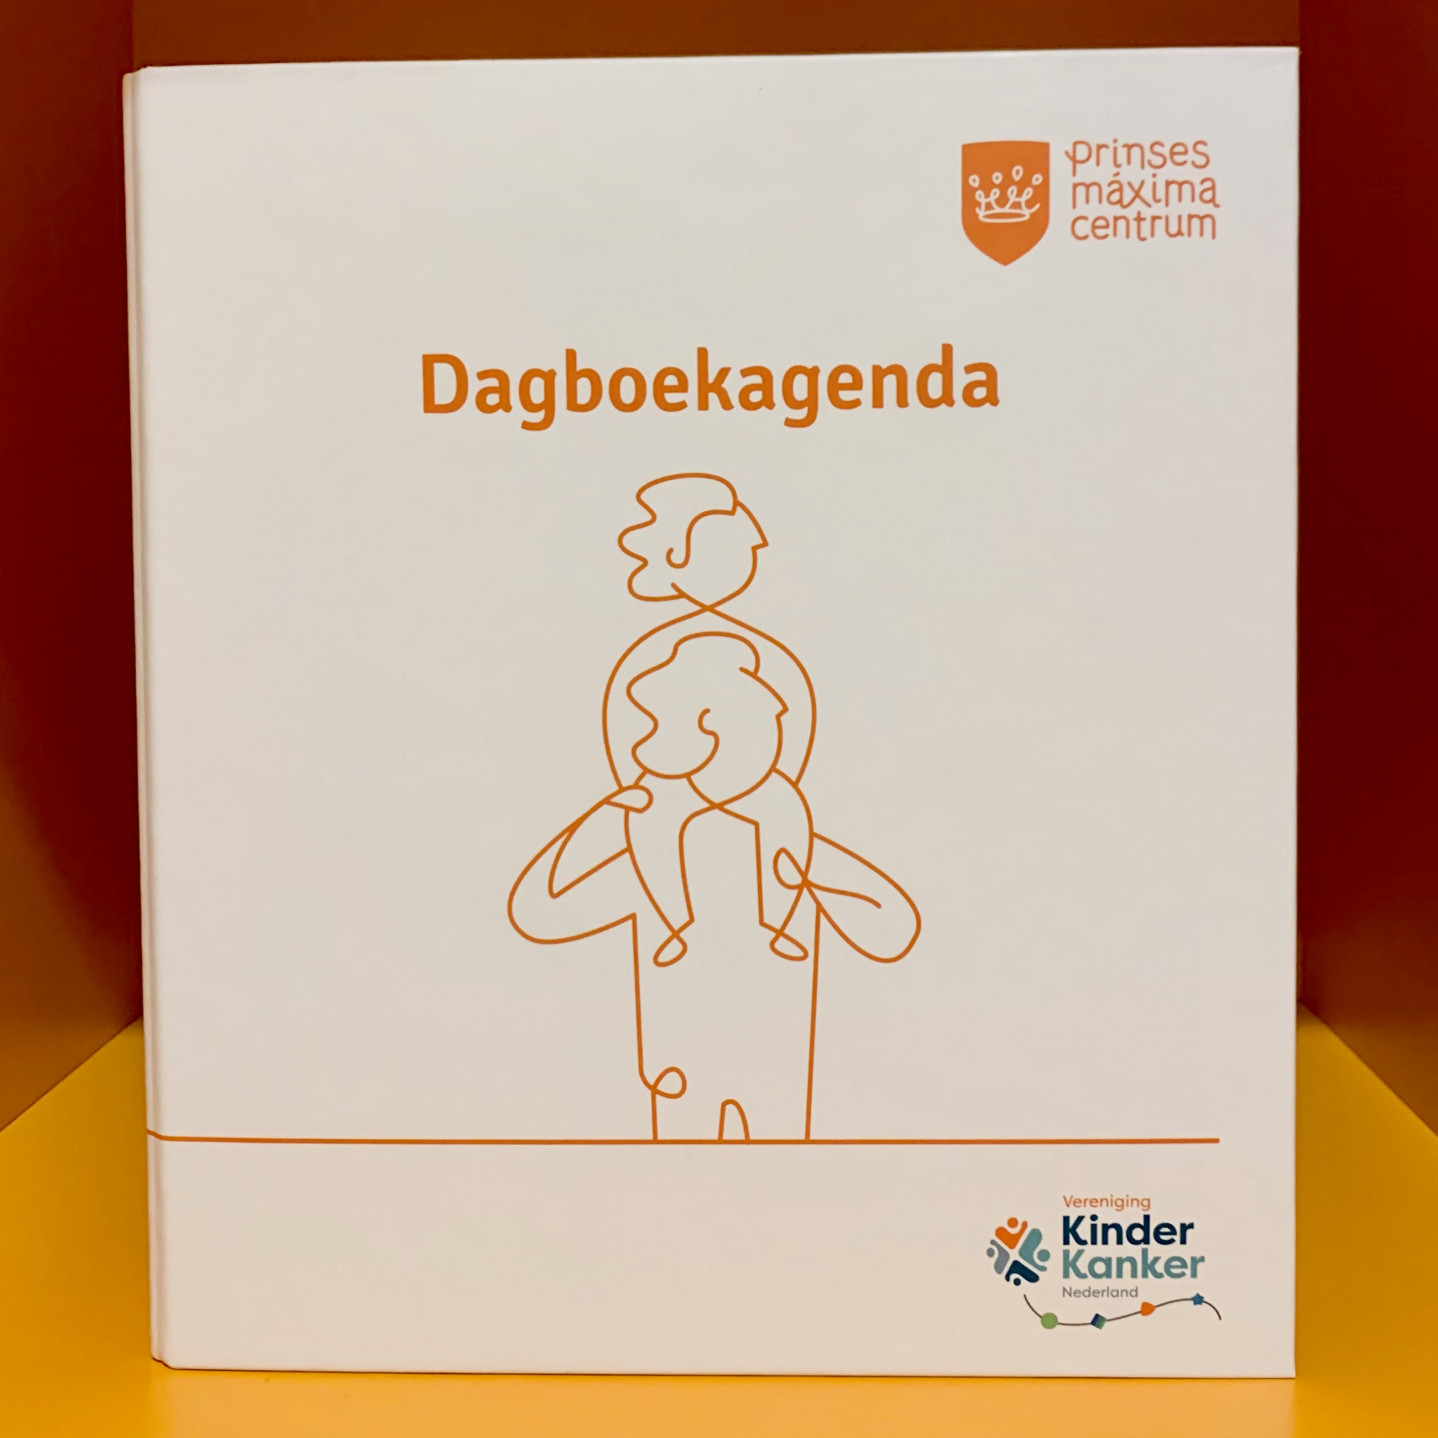 'Dagboekagenda' renewed